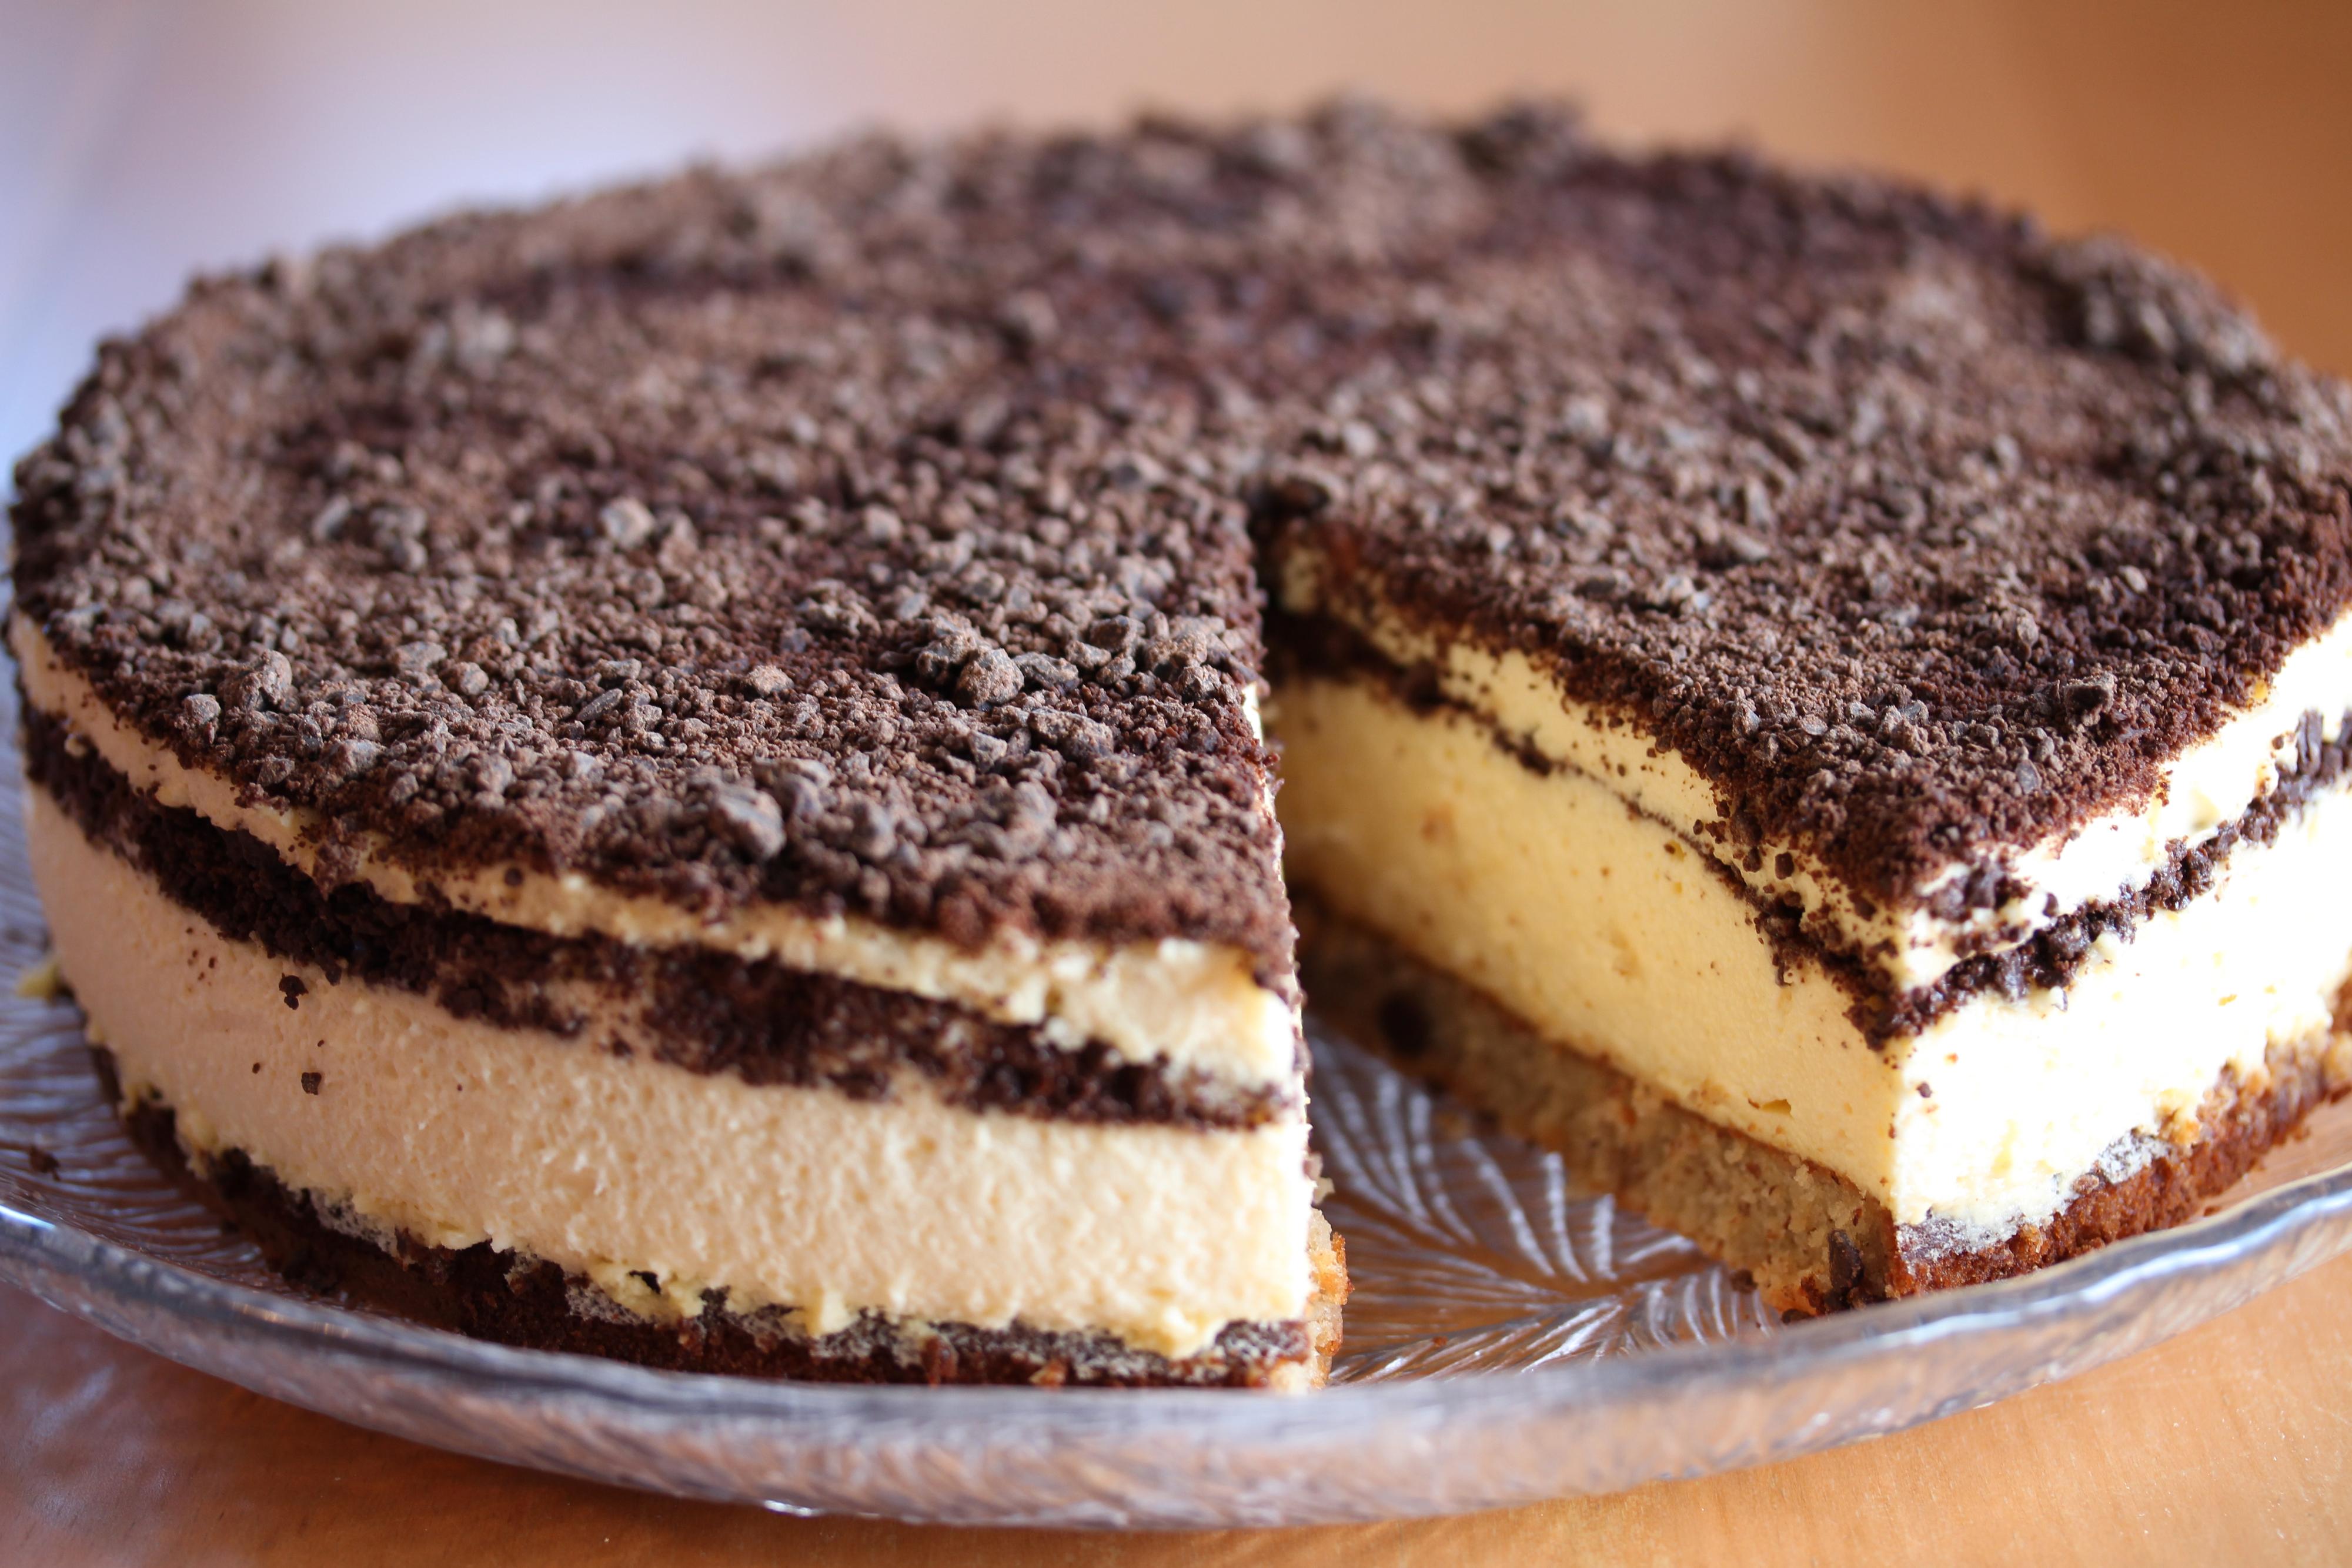 Sett kaken i kjøleskapet til fromasjfyllet har stivnet. Løsne kaken forsiktig fra formen og flytt den over på et kakefat.